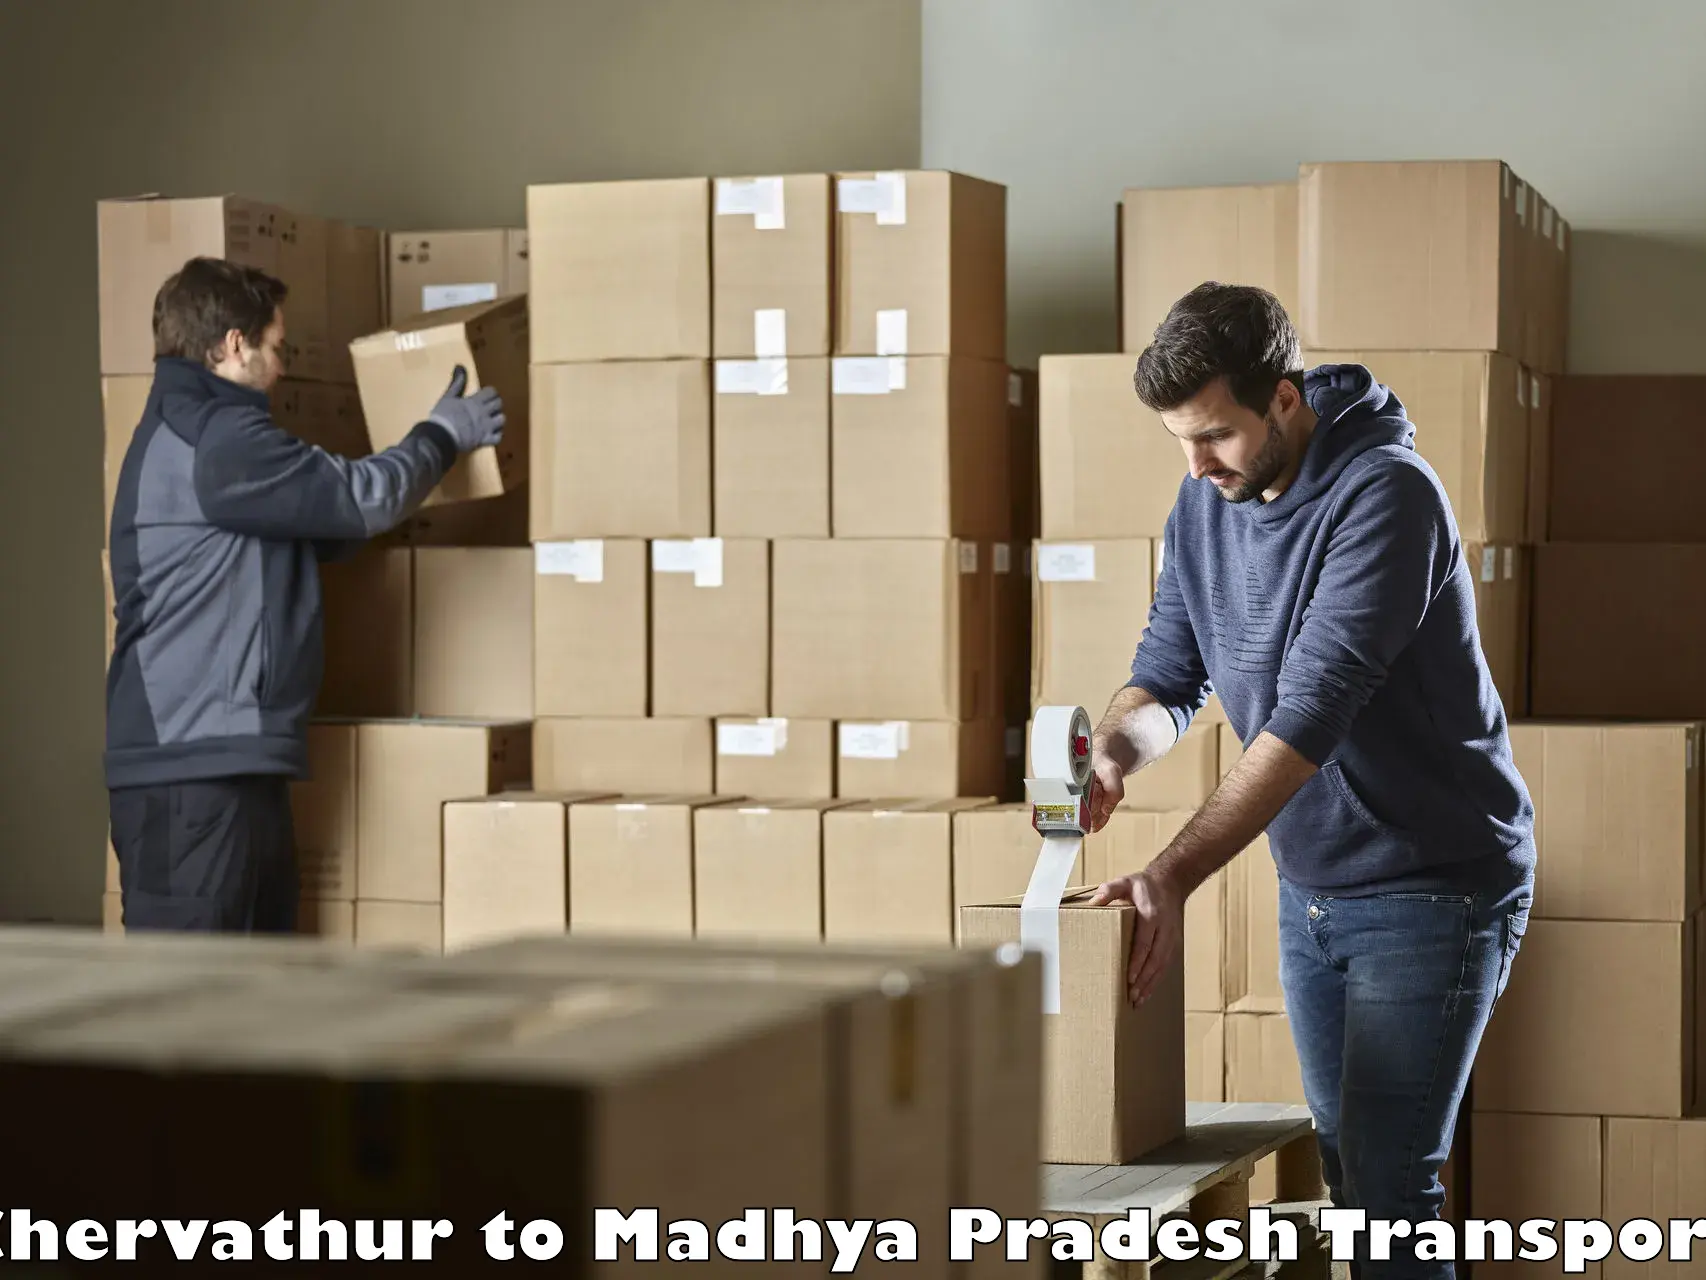 Pick up transport service Chervathur to Manasa